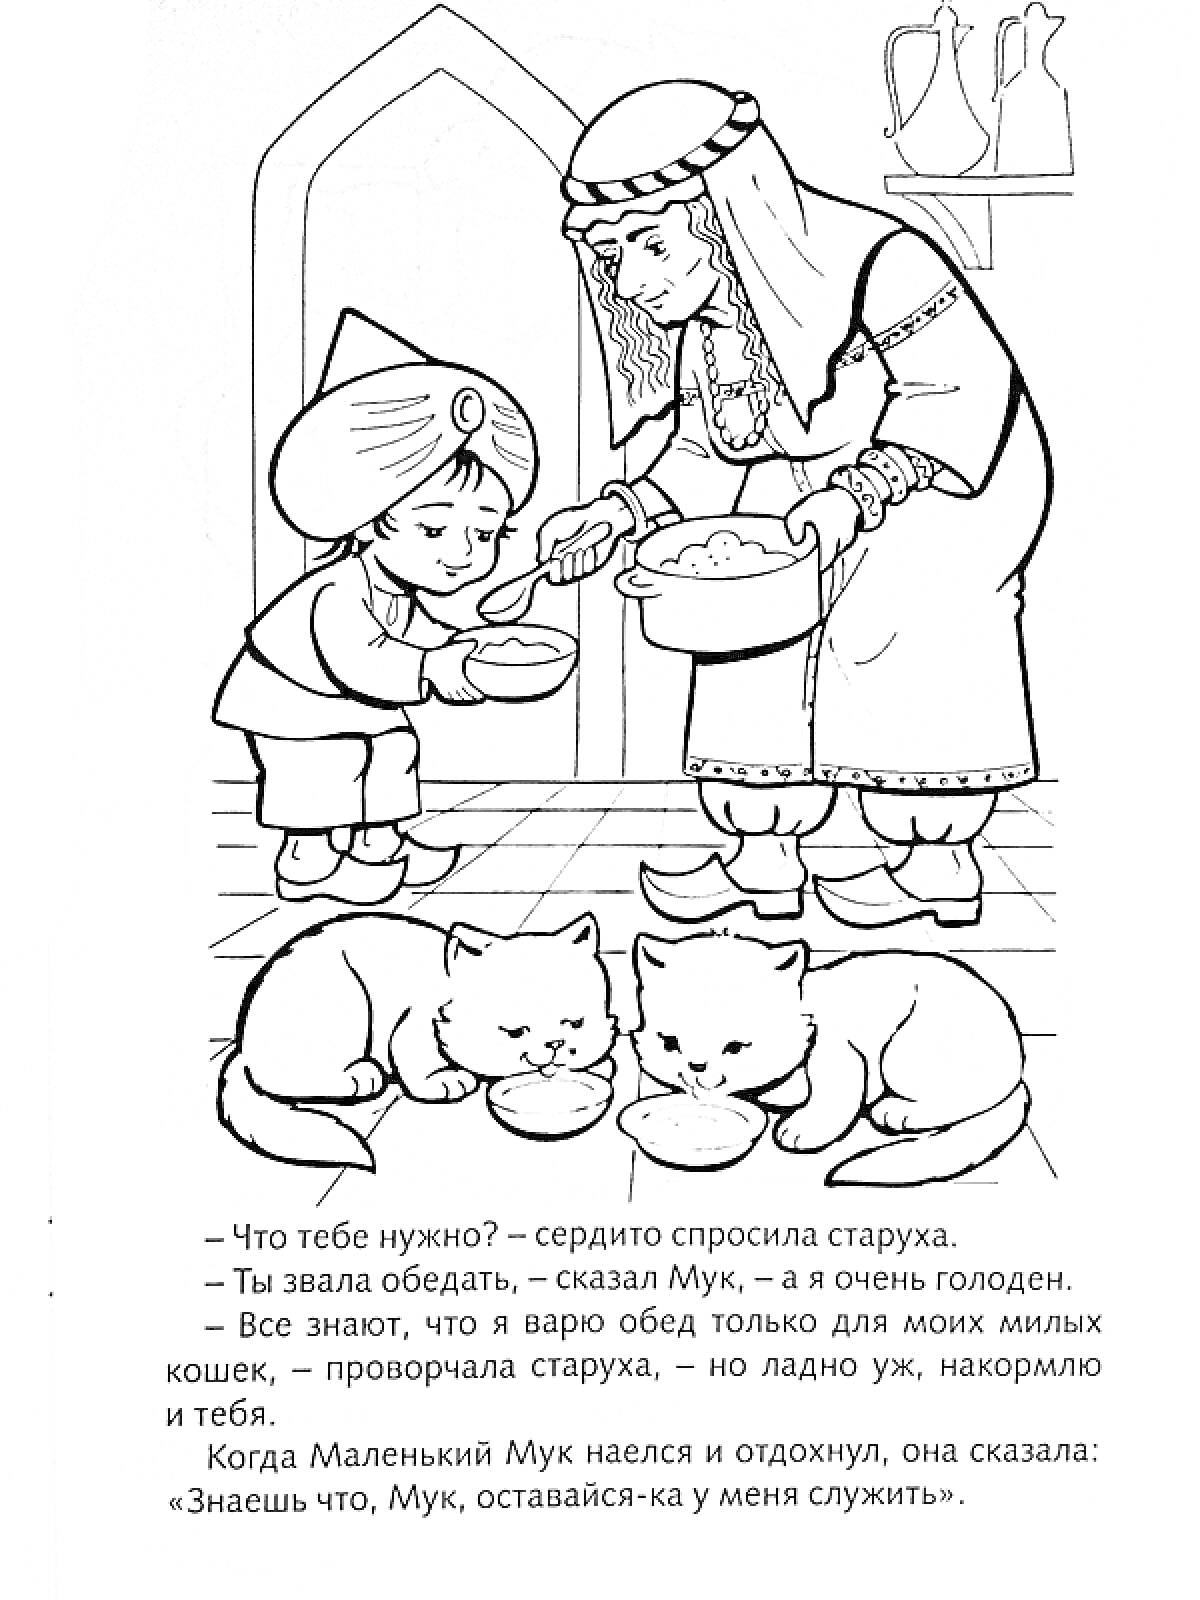 пожилая женщина, мальчик Мук и кошки, кормящиеся из мисок